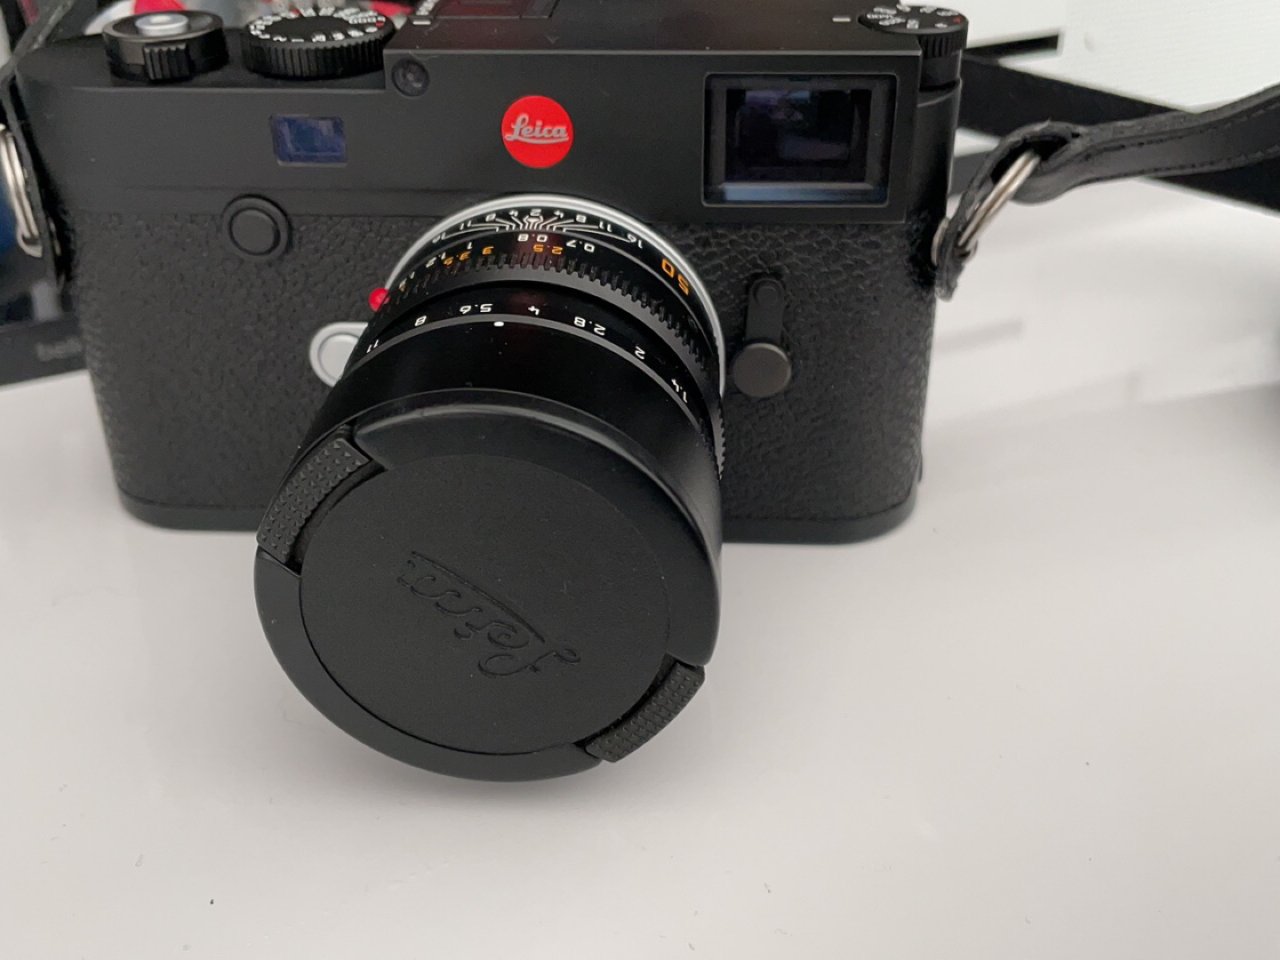 Leica 徕卡,M10-R